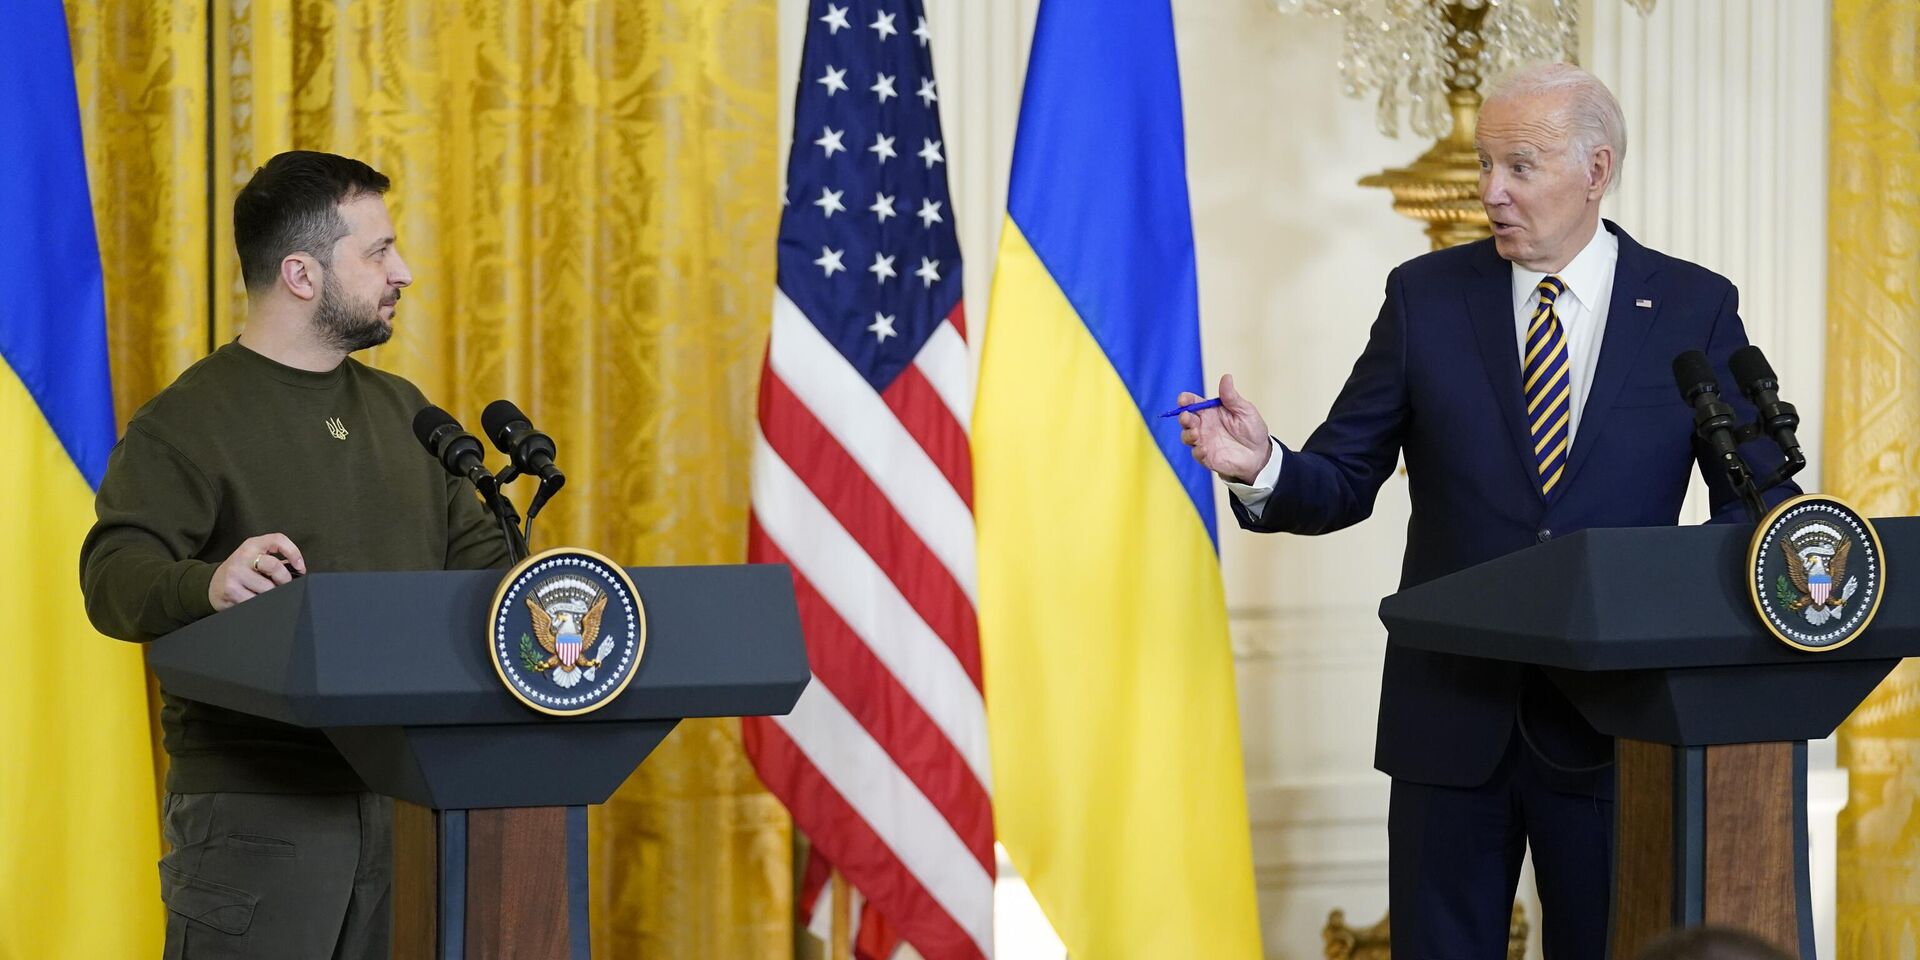 Президент США Джо Байден и президент Украины Владимир Зеленский во время пресс-конференции в Белом доме в Вашингтоне. 21 декабря 2022 года - ИноСМИ, 1920, 27.05.2023